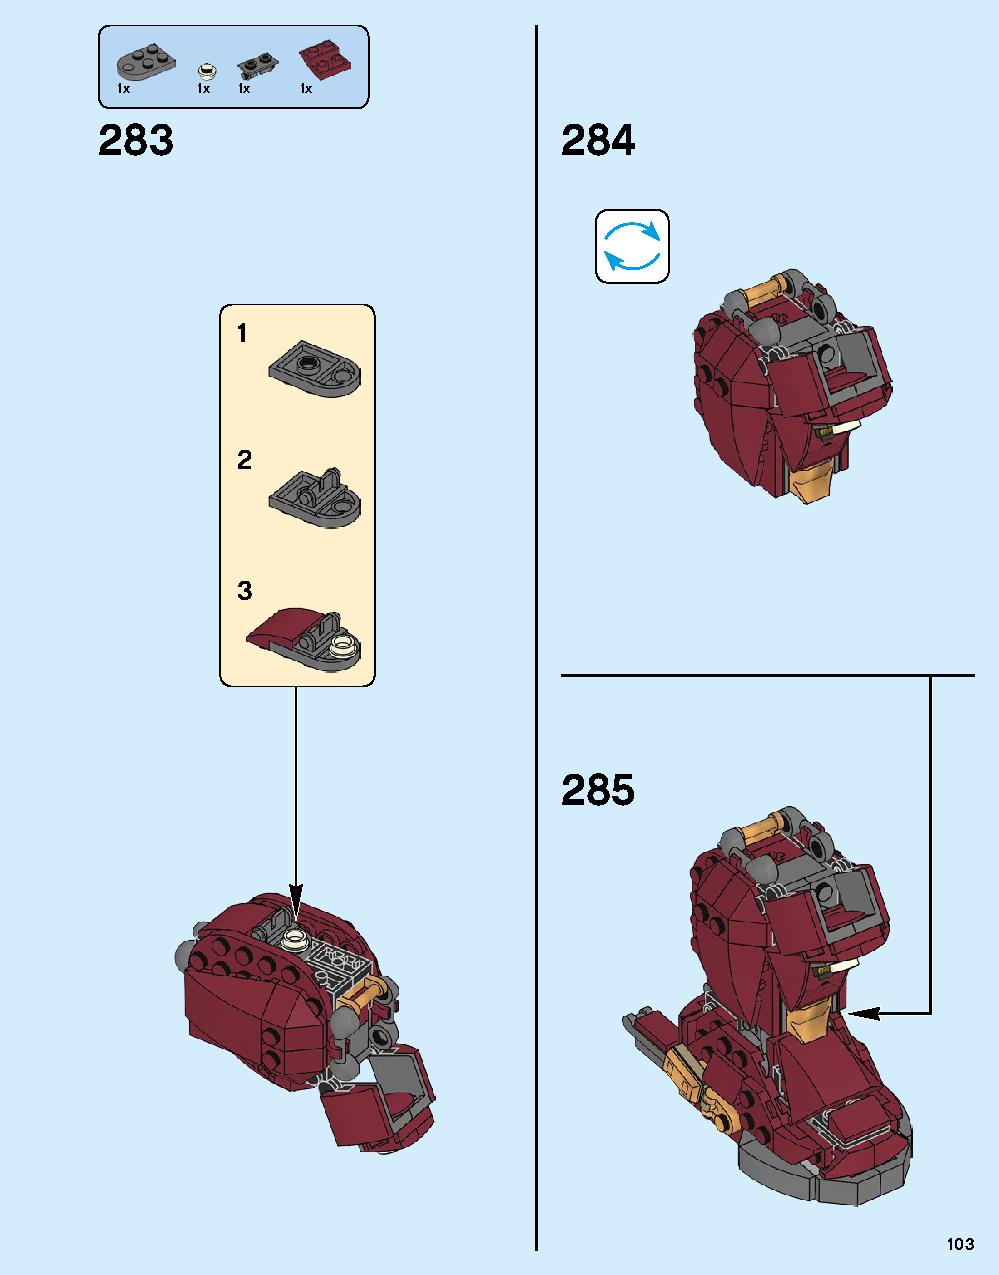 ハルクバスター：ウルトロン・エディション 76105 レゴの商品情報 レゴの説明書・組立方法 103 page